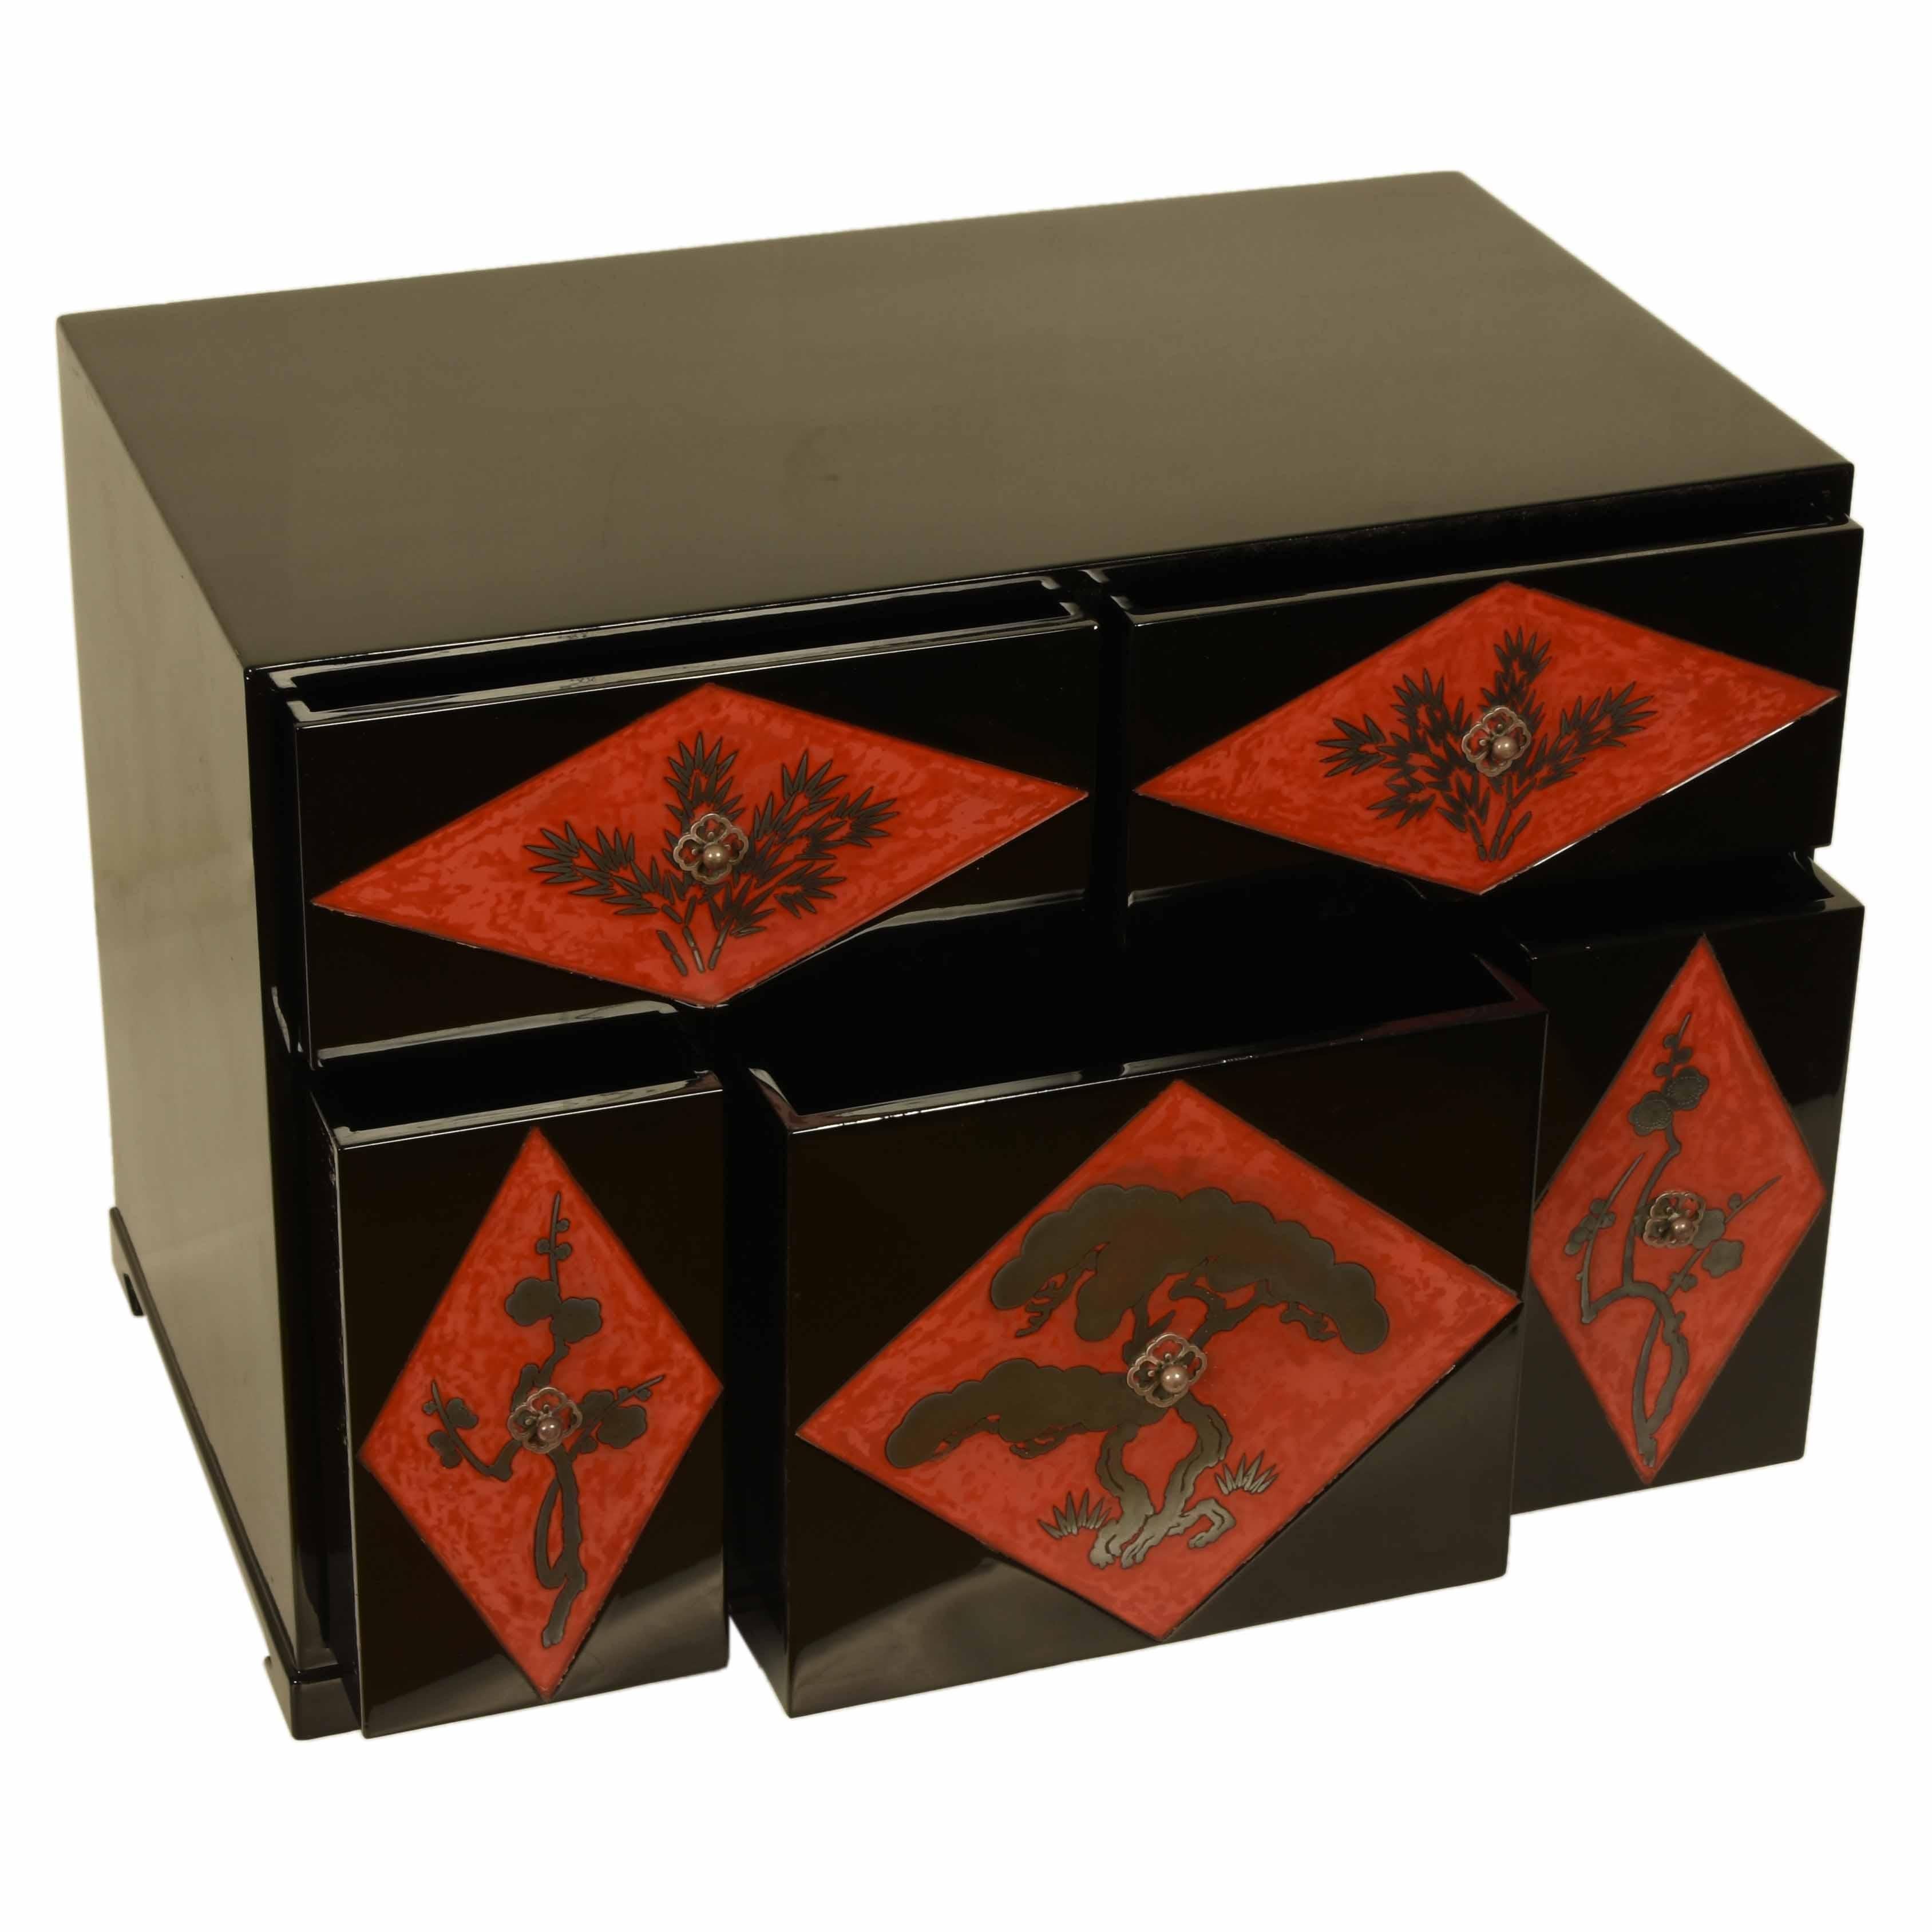 Eine antike japanische Kommode mit fünf Schubladen, schwarz lackiert. Jede Schubladenfront ist mit einem silbernen Kiefer- und Blütendekor versehen, das von einem grafischen, rot lackierten Rautenhintergrund umrahmt wird. Die Beschläge sind ebenso